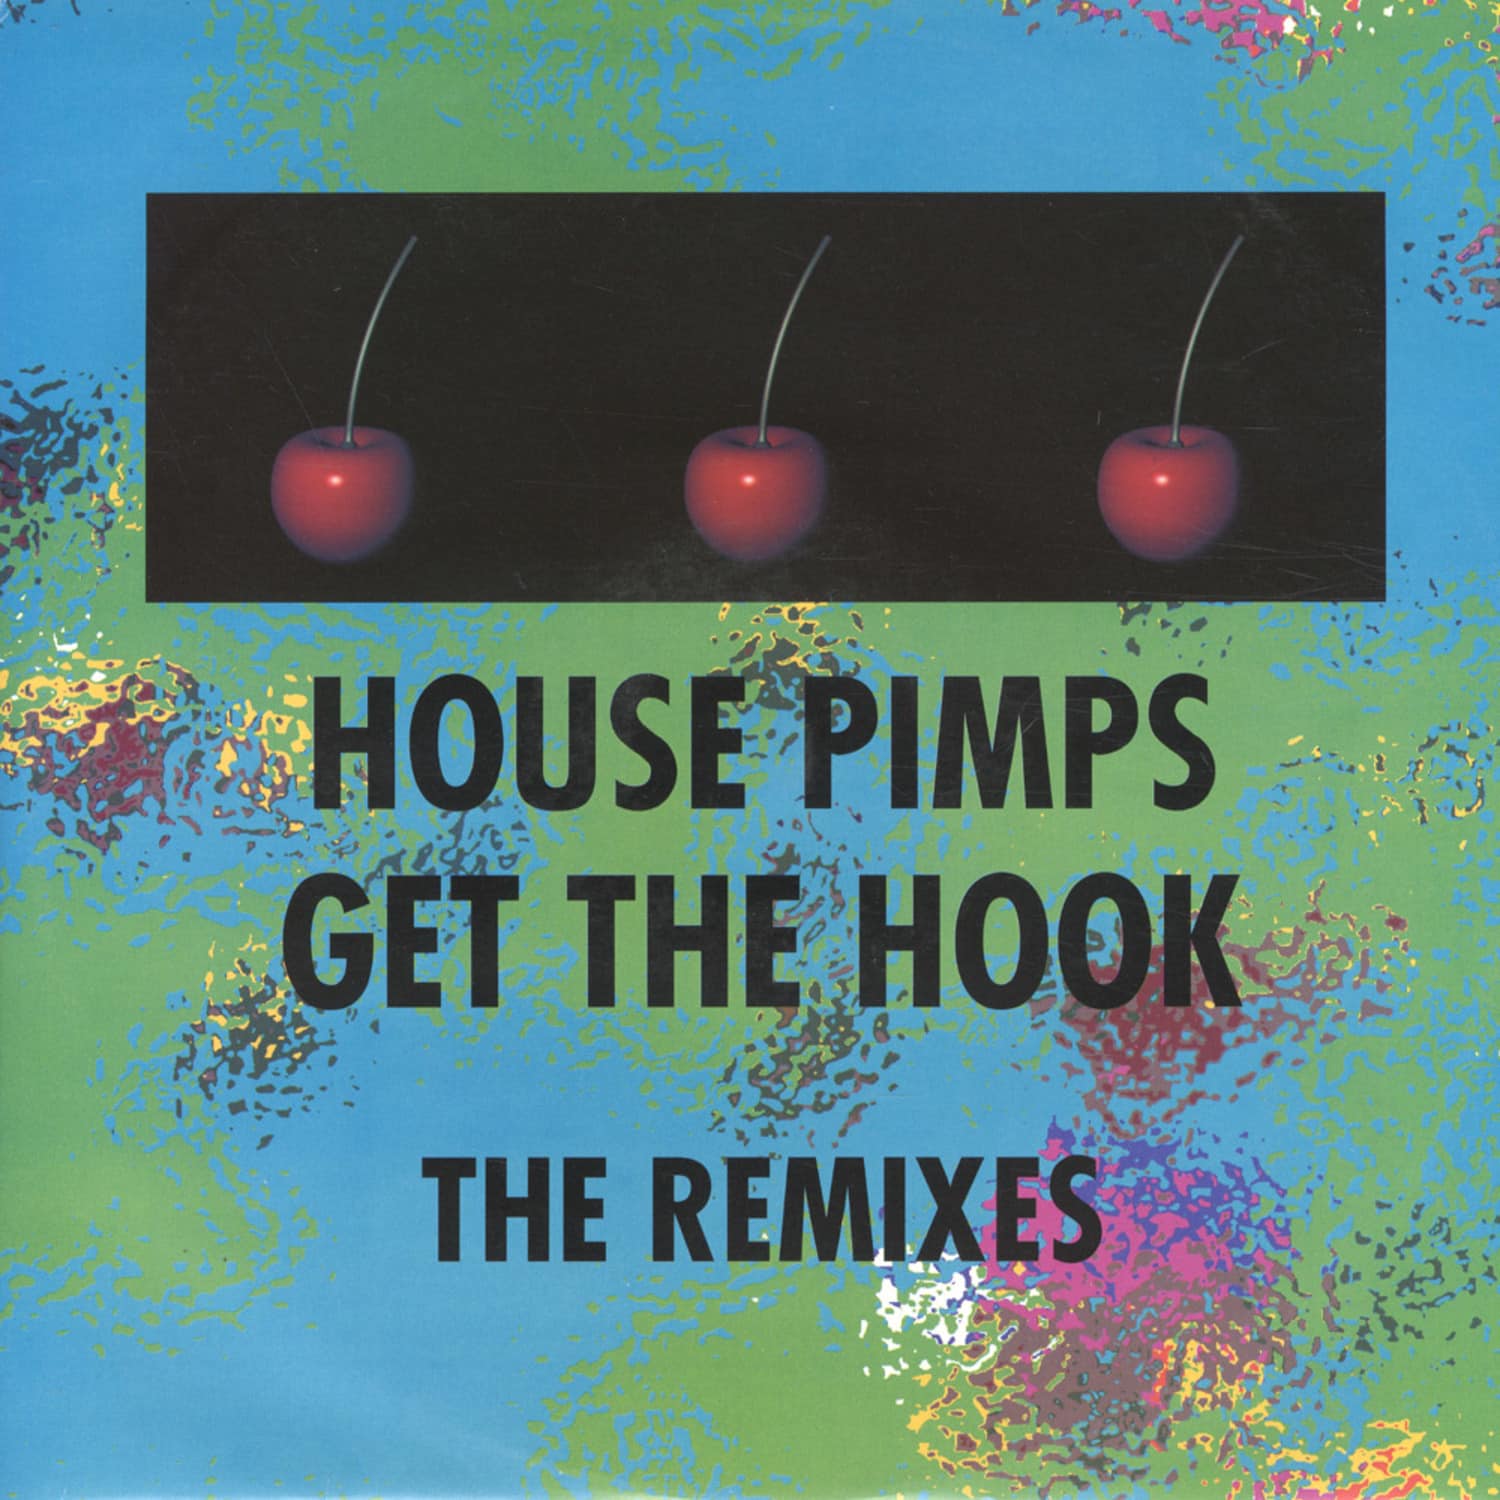 House Pimps - GET THE HOOK REMIXES